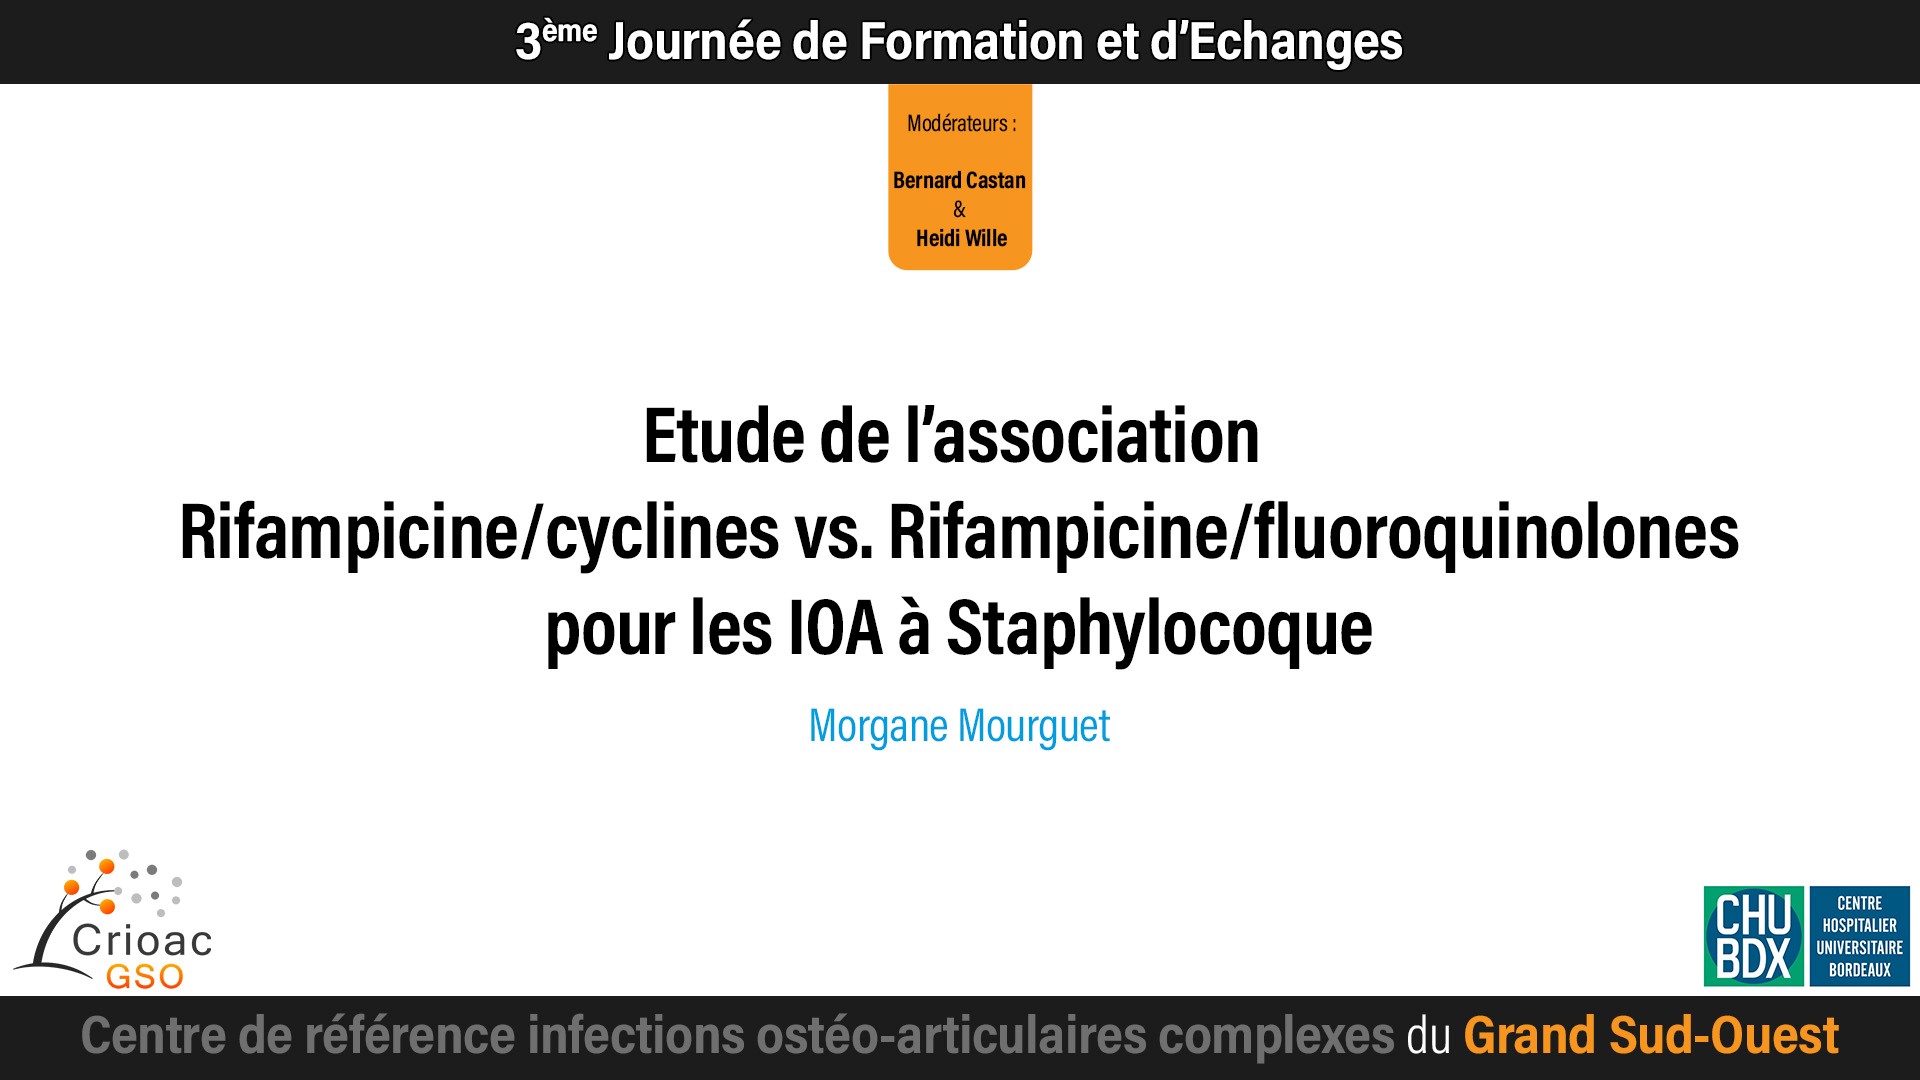 Etude de l’association Rifampicine/cyclines vs. Rifampicine/fluoroquinolones pour les
IOA à Staphylocoque